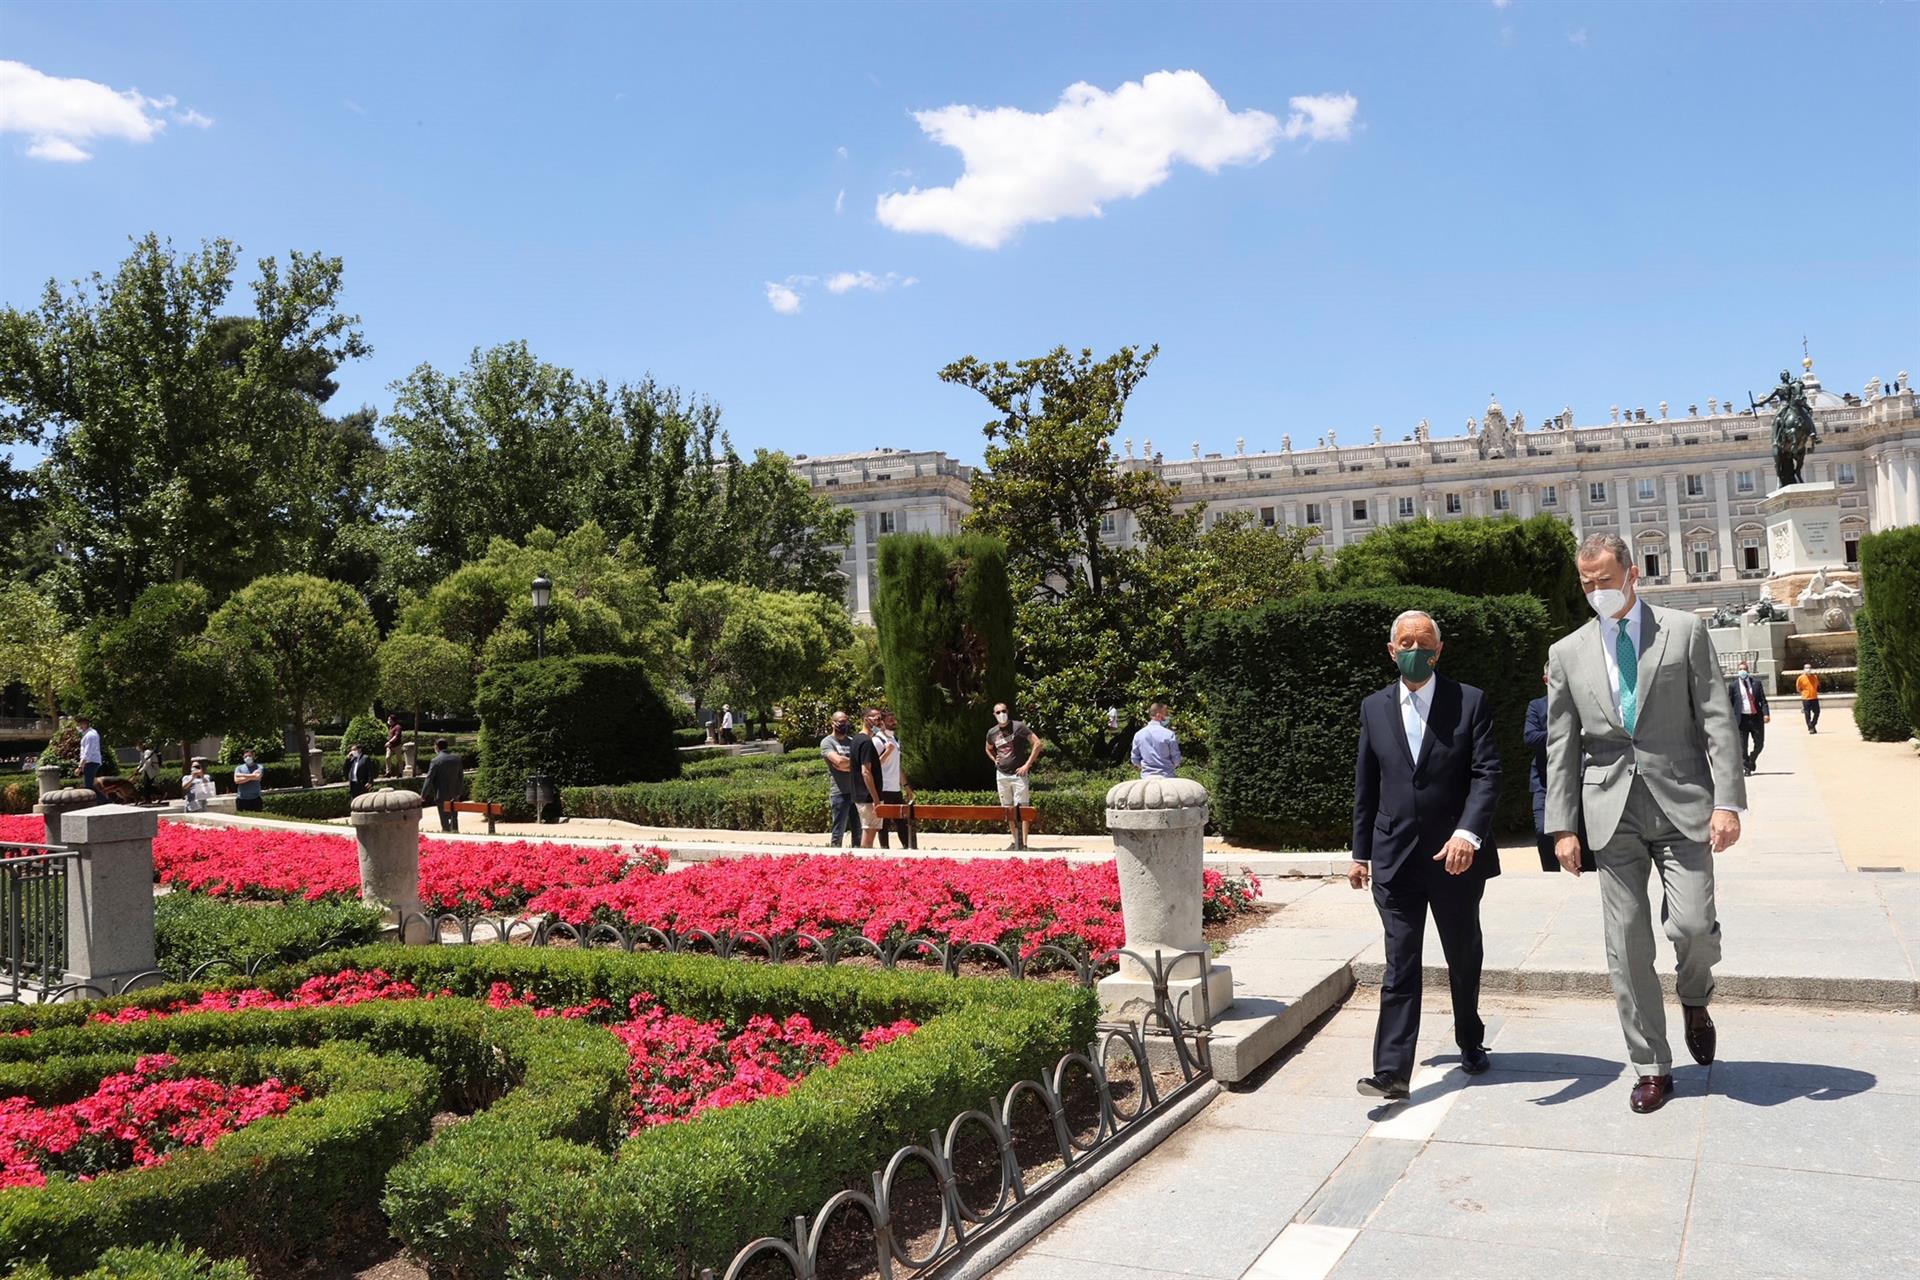 O Rei Felipe VI da Espanha e o Presidente Português, Marcelo Rebelo de Sousa, caminhando em frente ao Palácio Real durante seu encontro em Madrid